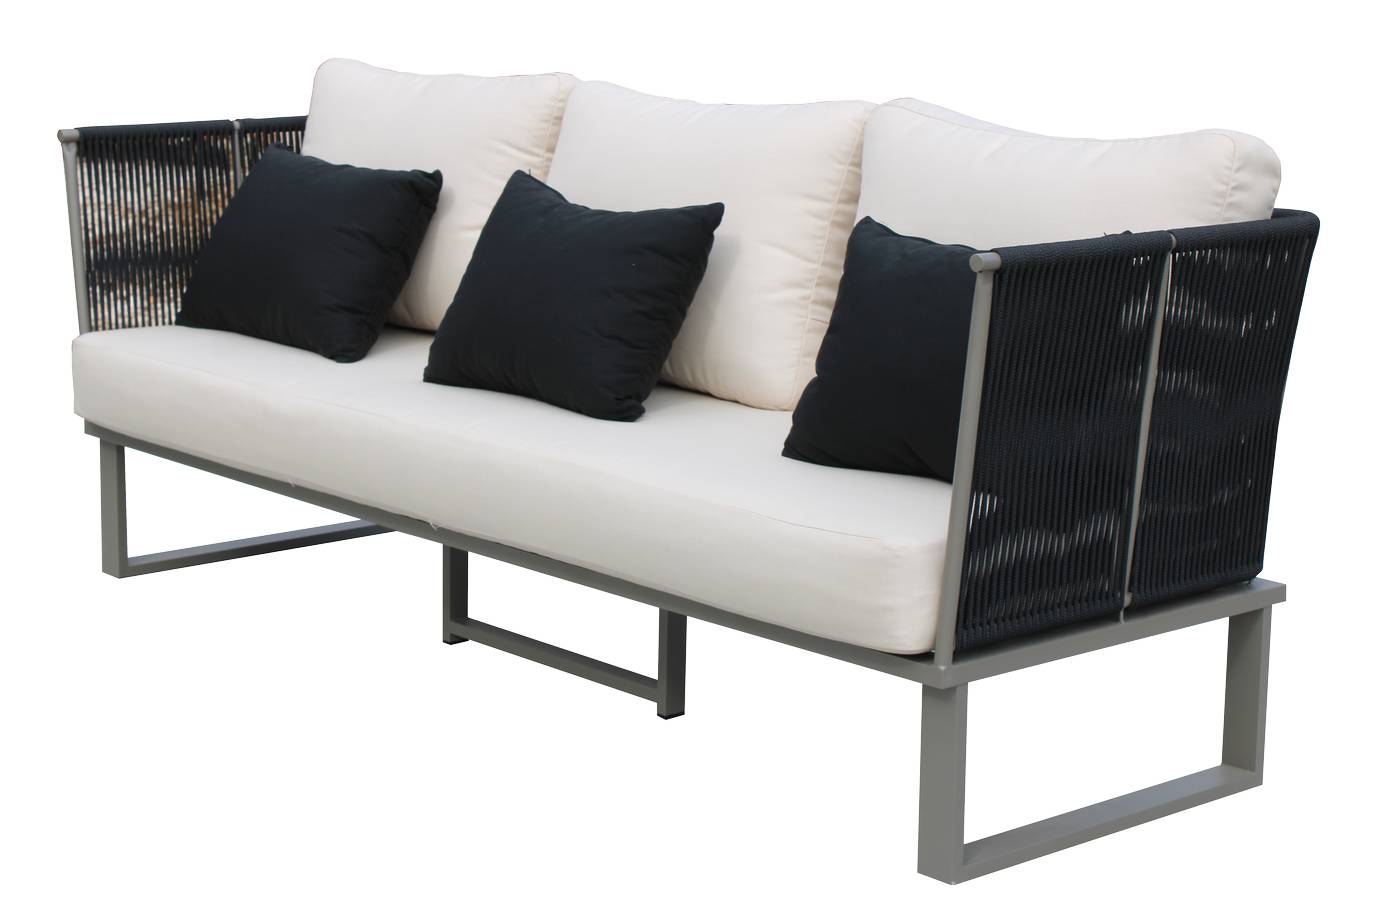 Set Cuerda Alis-8 - Conjunto aluminio y cuerda: 1 sofá de 3 plazas + 2 sillones + 1 mesa de centro. Disponible varios colores.